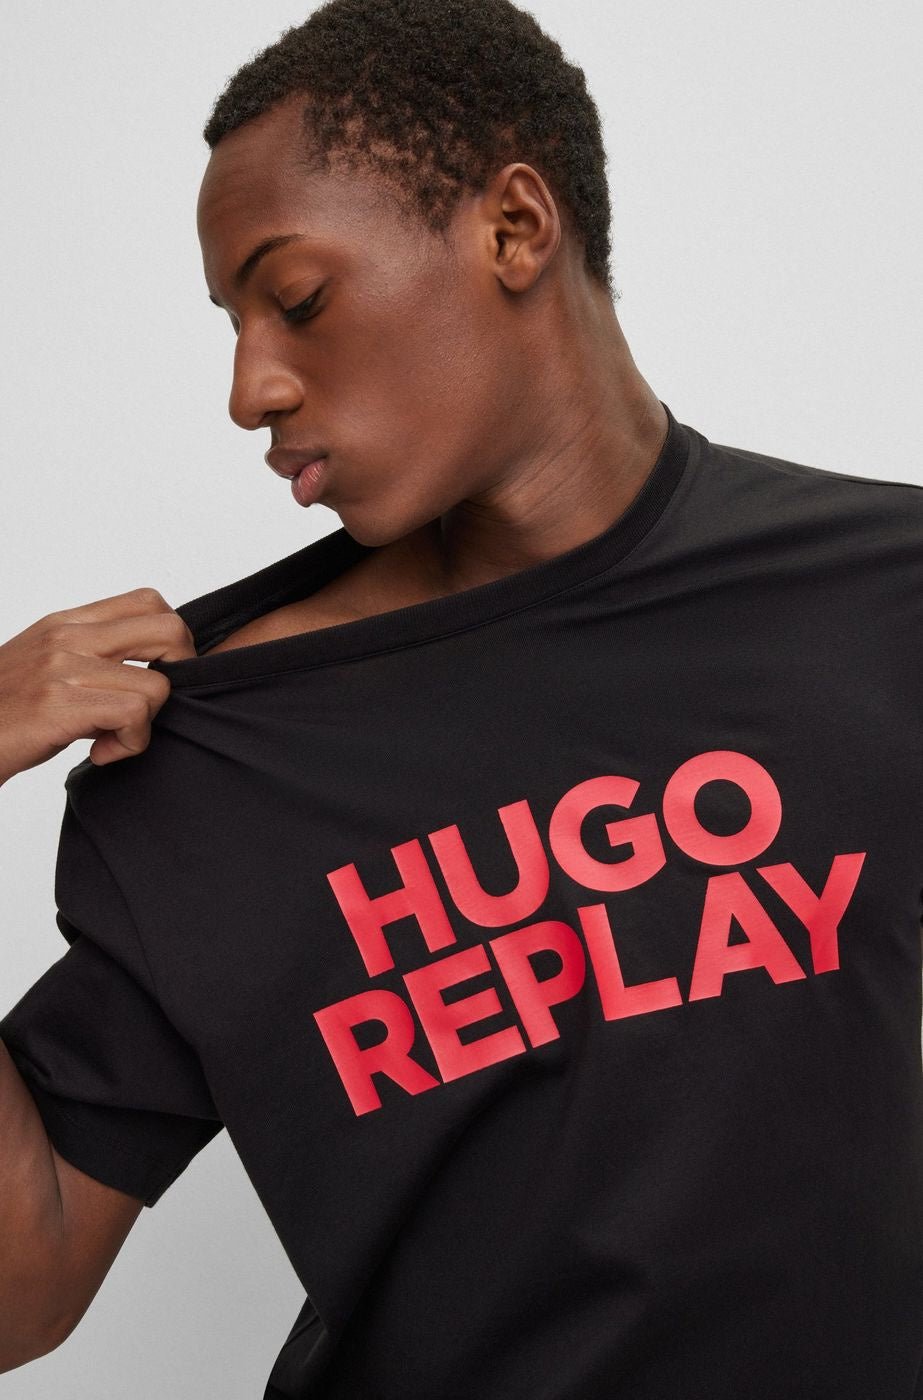 T-shirt Replay HUGO BOSS - Crush Store